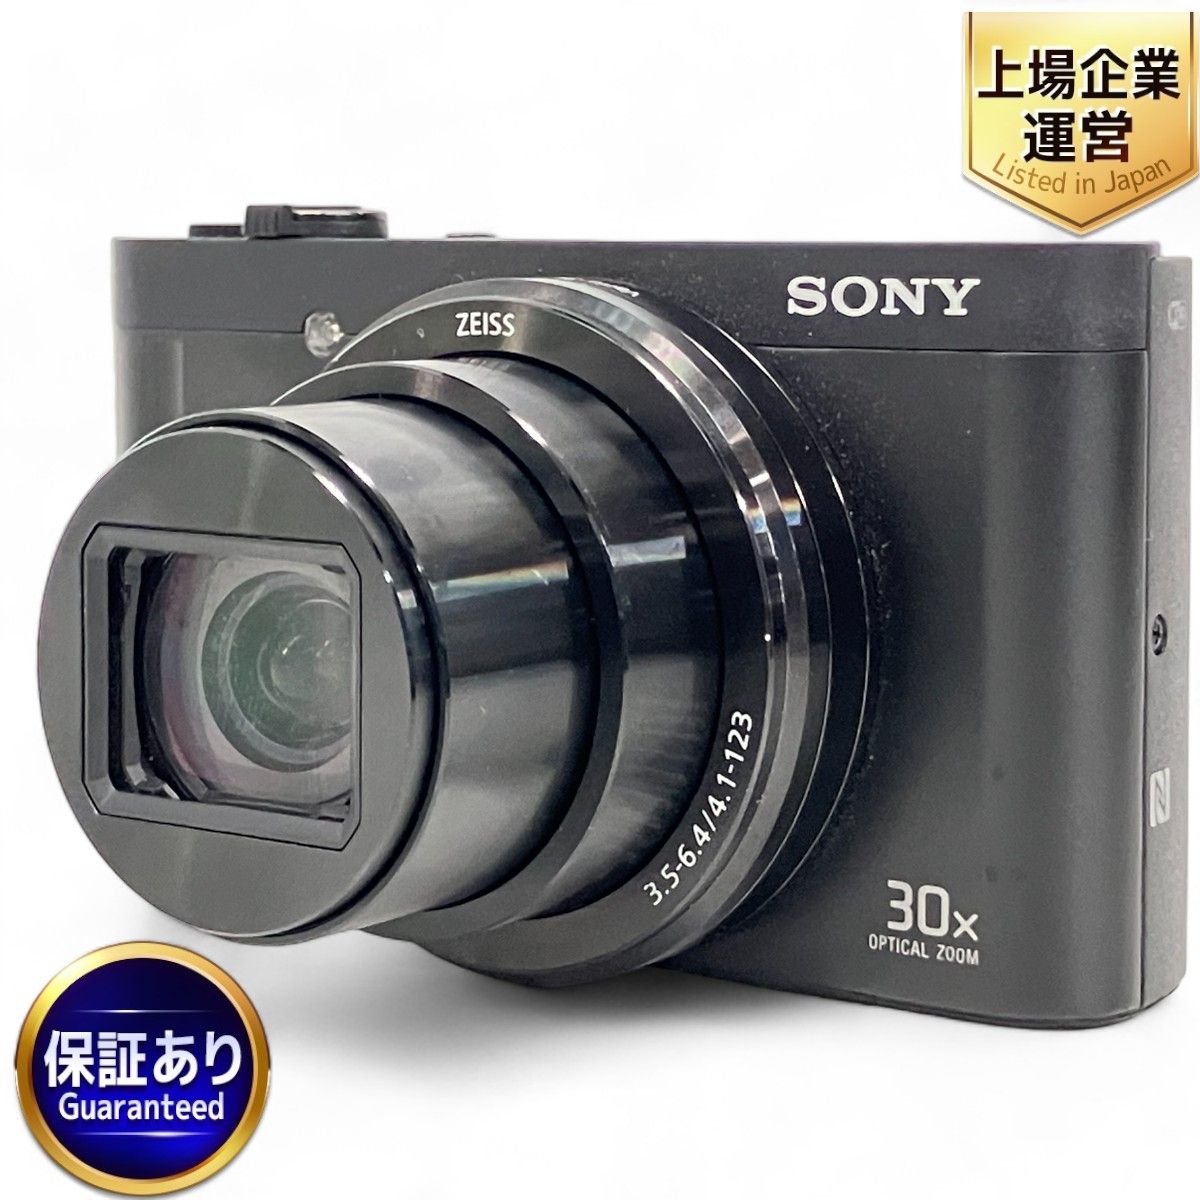 SONY DSC-WX500 Cyber-Shot コンパクト デジタル カメラ コンデジ ソニー 中古 Z9015717 - メルカリ